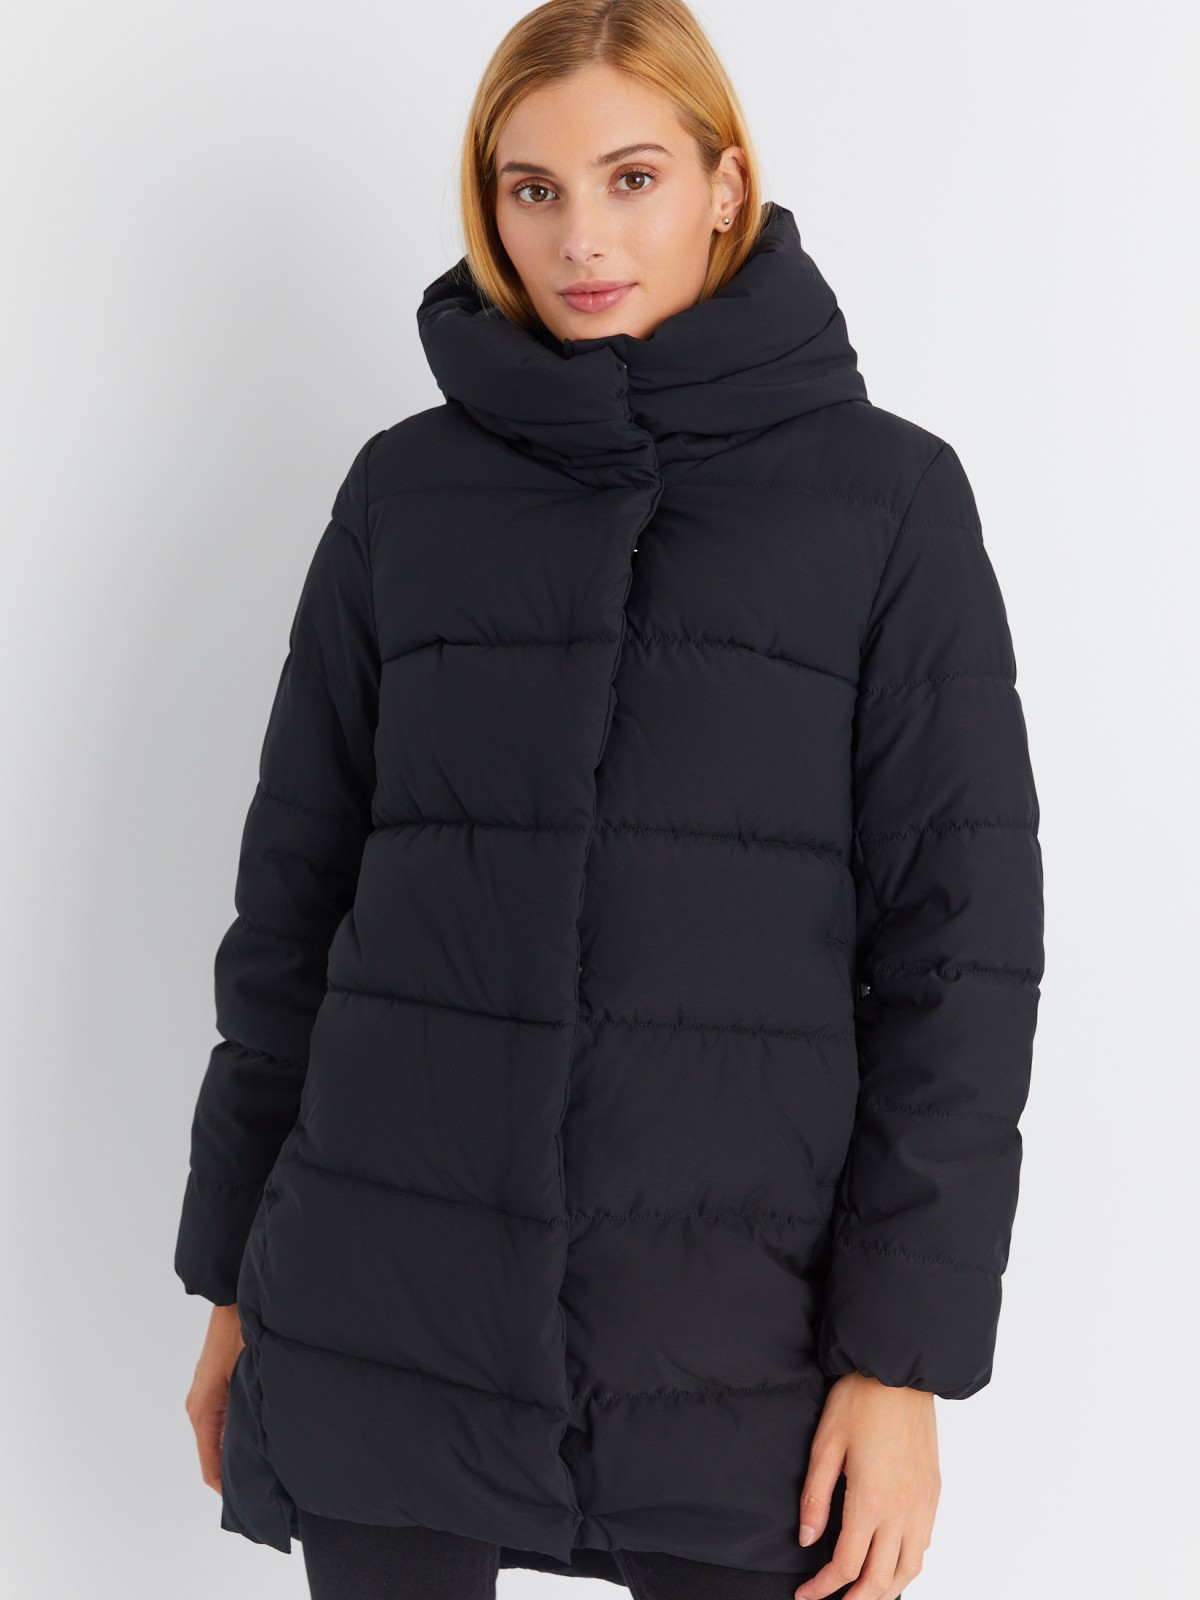 Тёплая стёганая куртка-пальто удлинённого фасона с капюшоном zolla 02334522J144, цвет черный, размер XS - фото 3